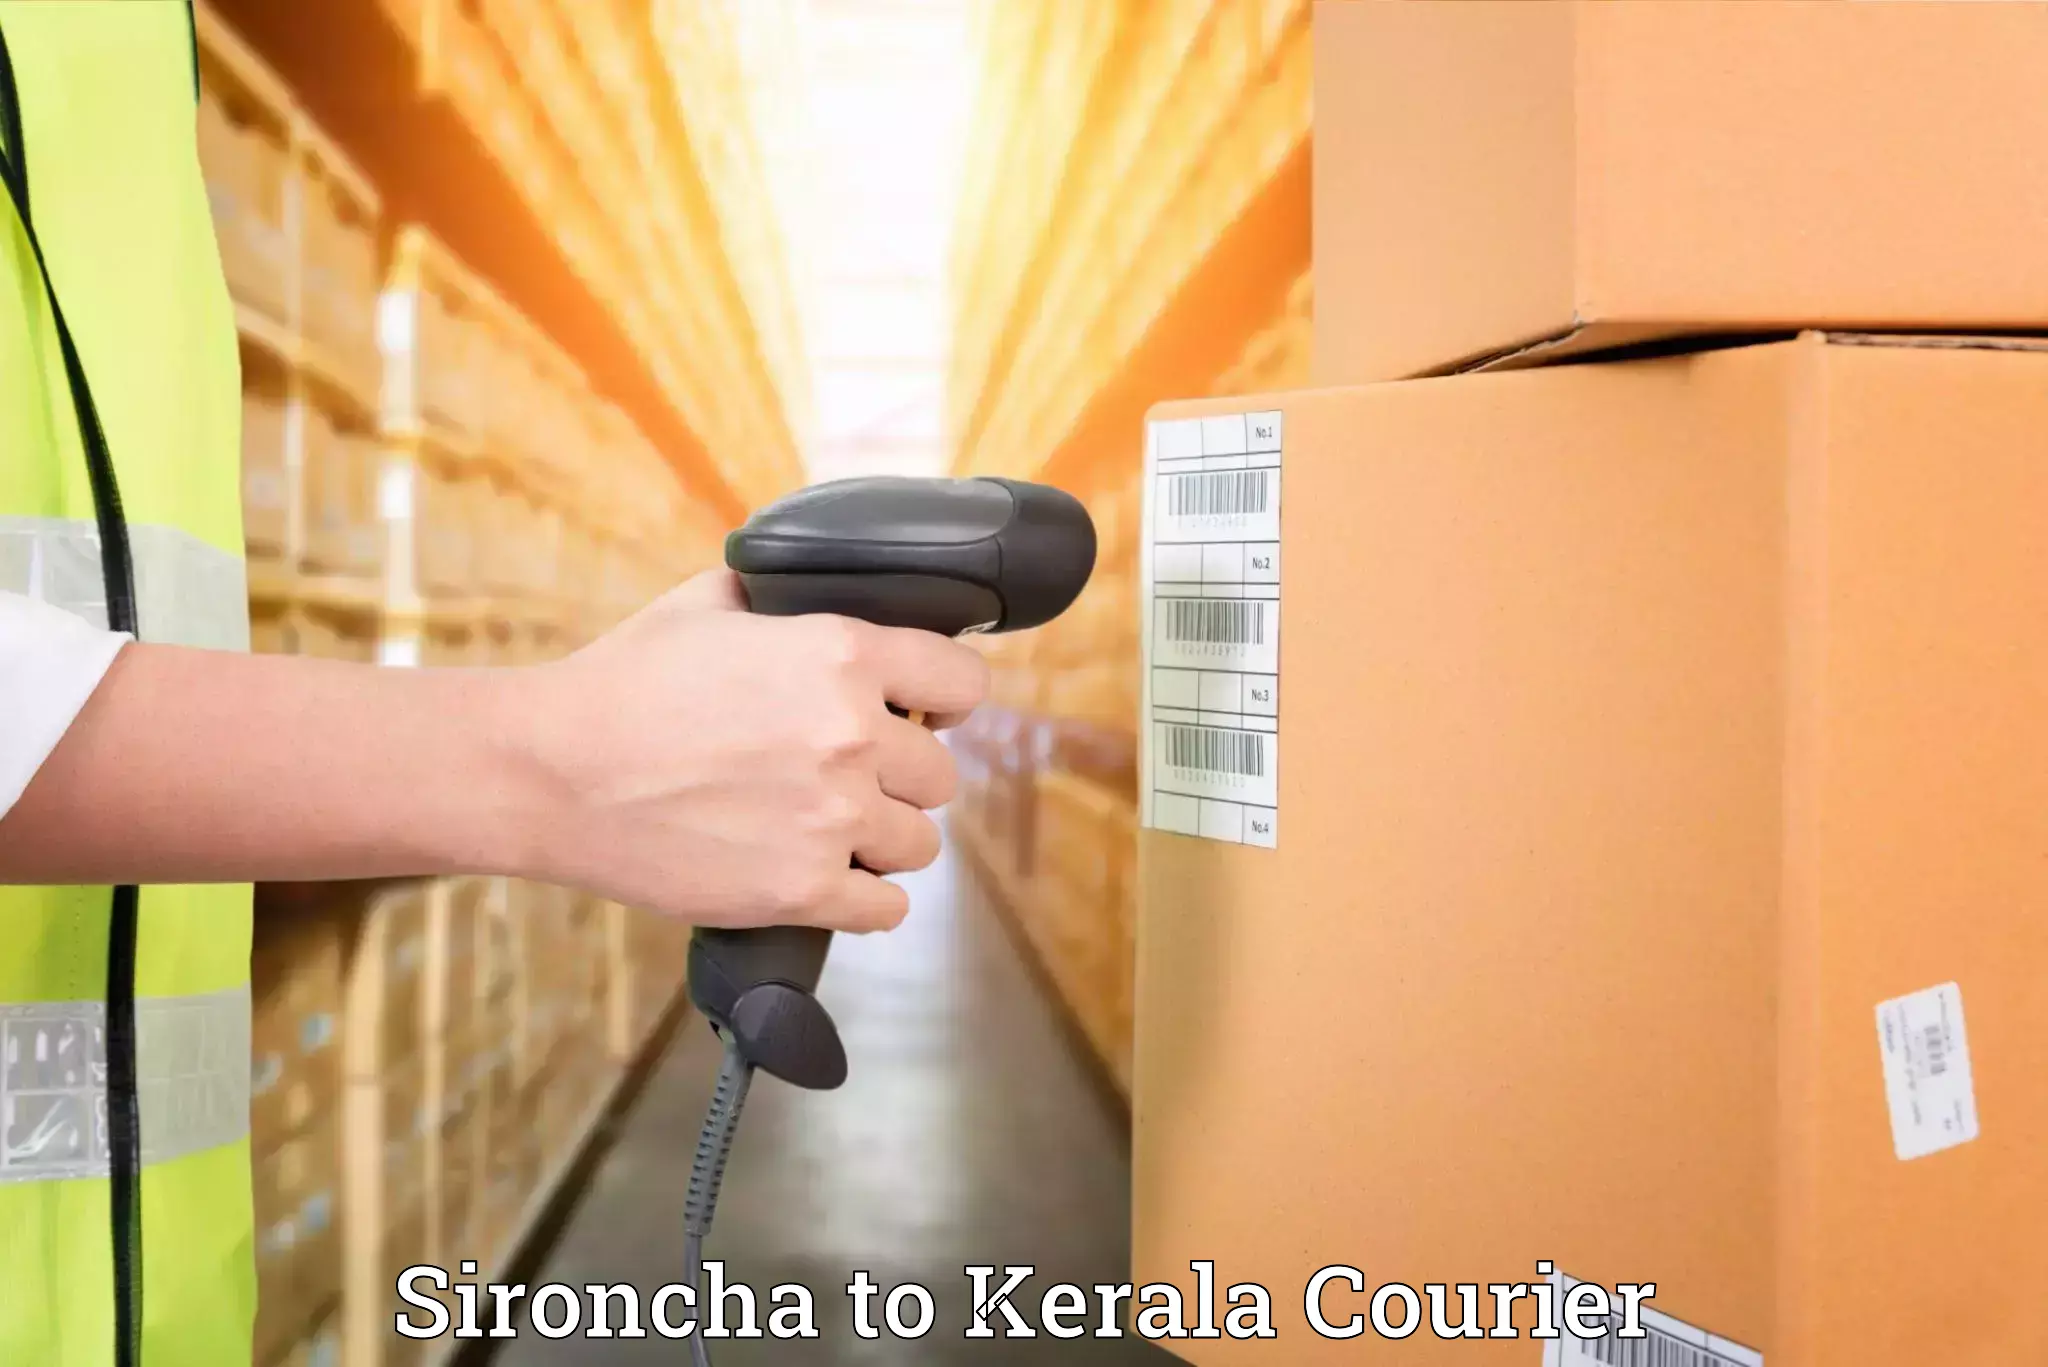 Door-to-door relocation services Sironcha to Kerala